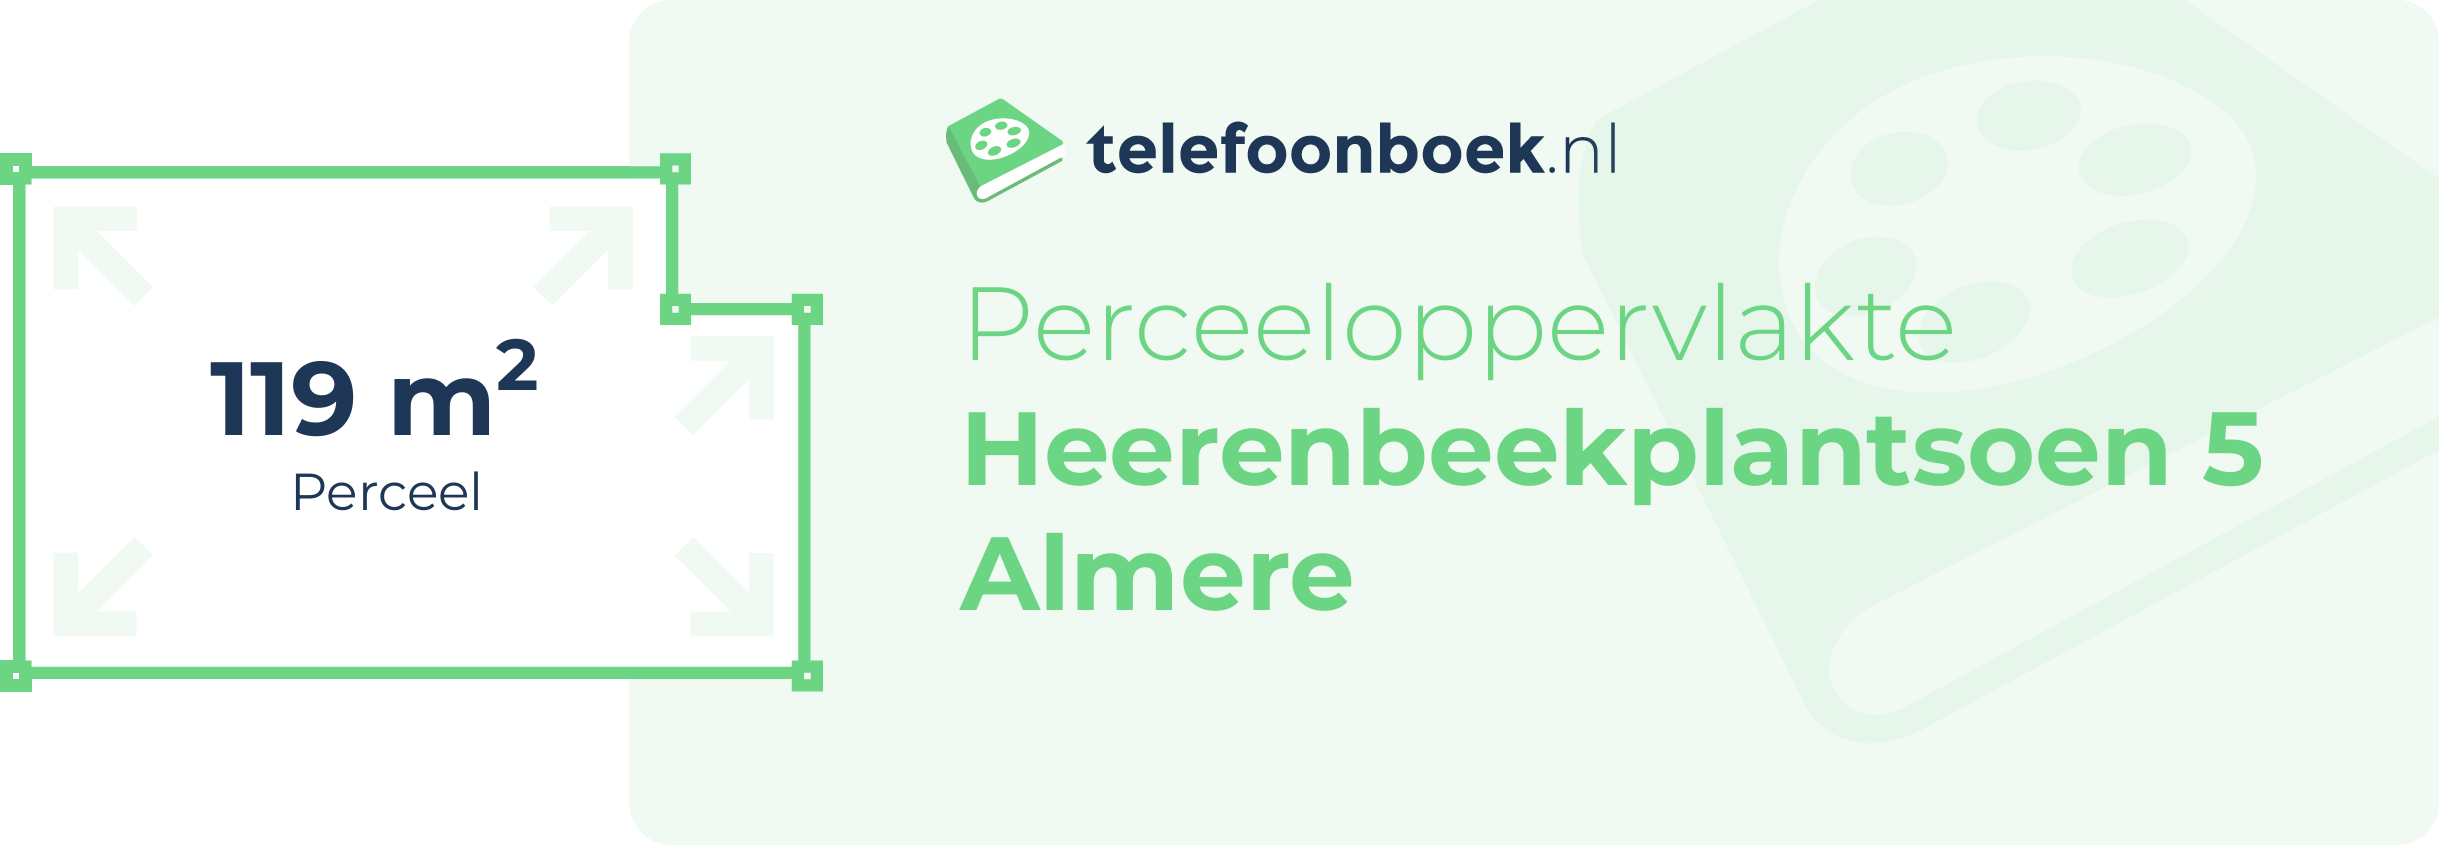 Perceeloppervlakte Heerenbeekplantsoen 5 Almere